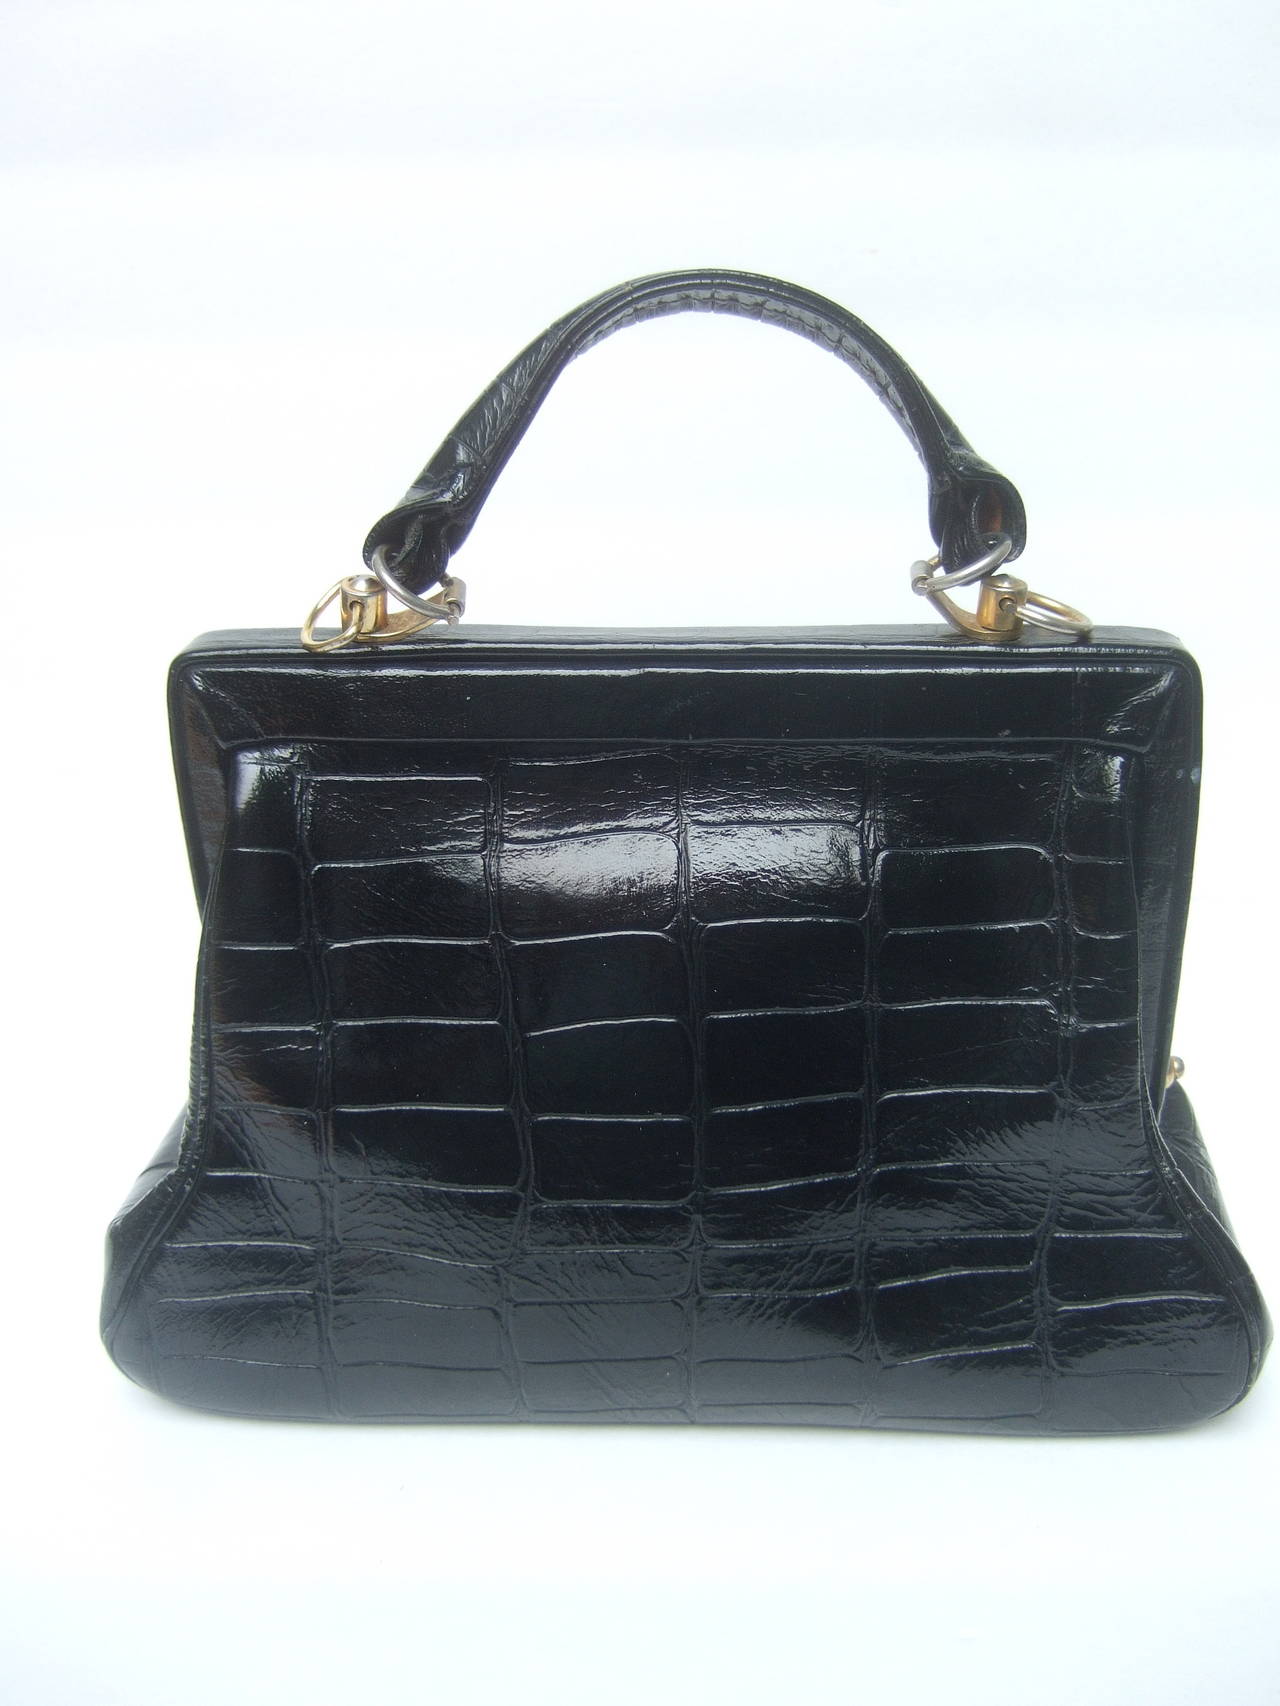 Roberta di Camerino Sleek Embossed Black Leather Handbag Made in Italy c 1960 2